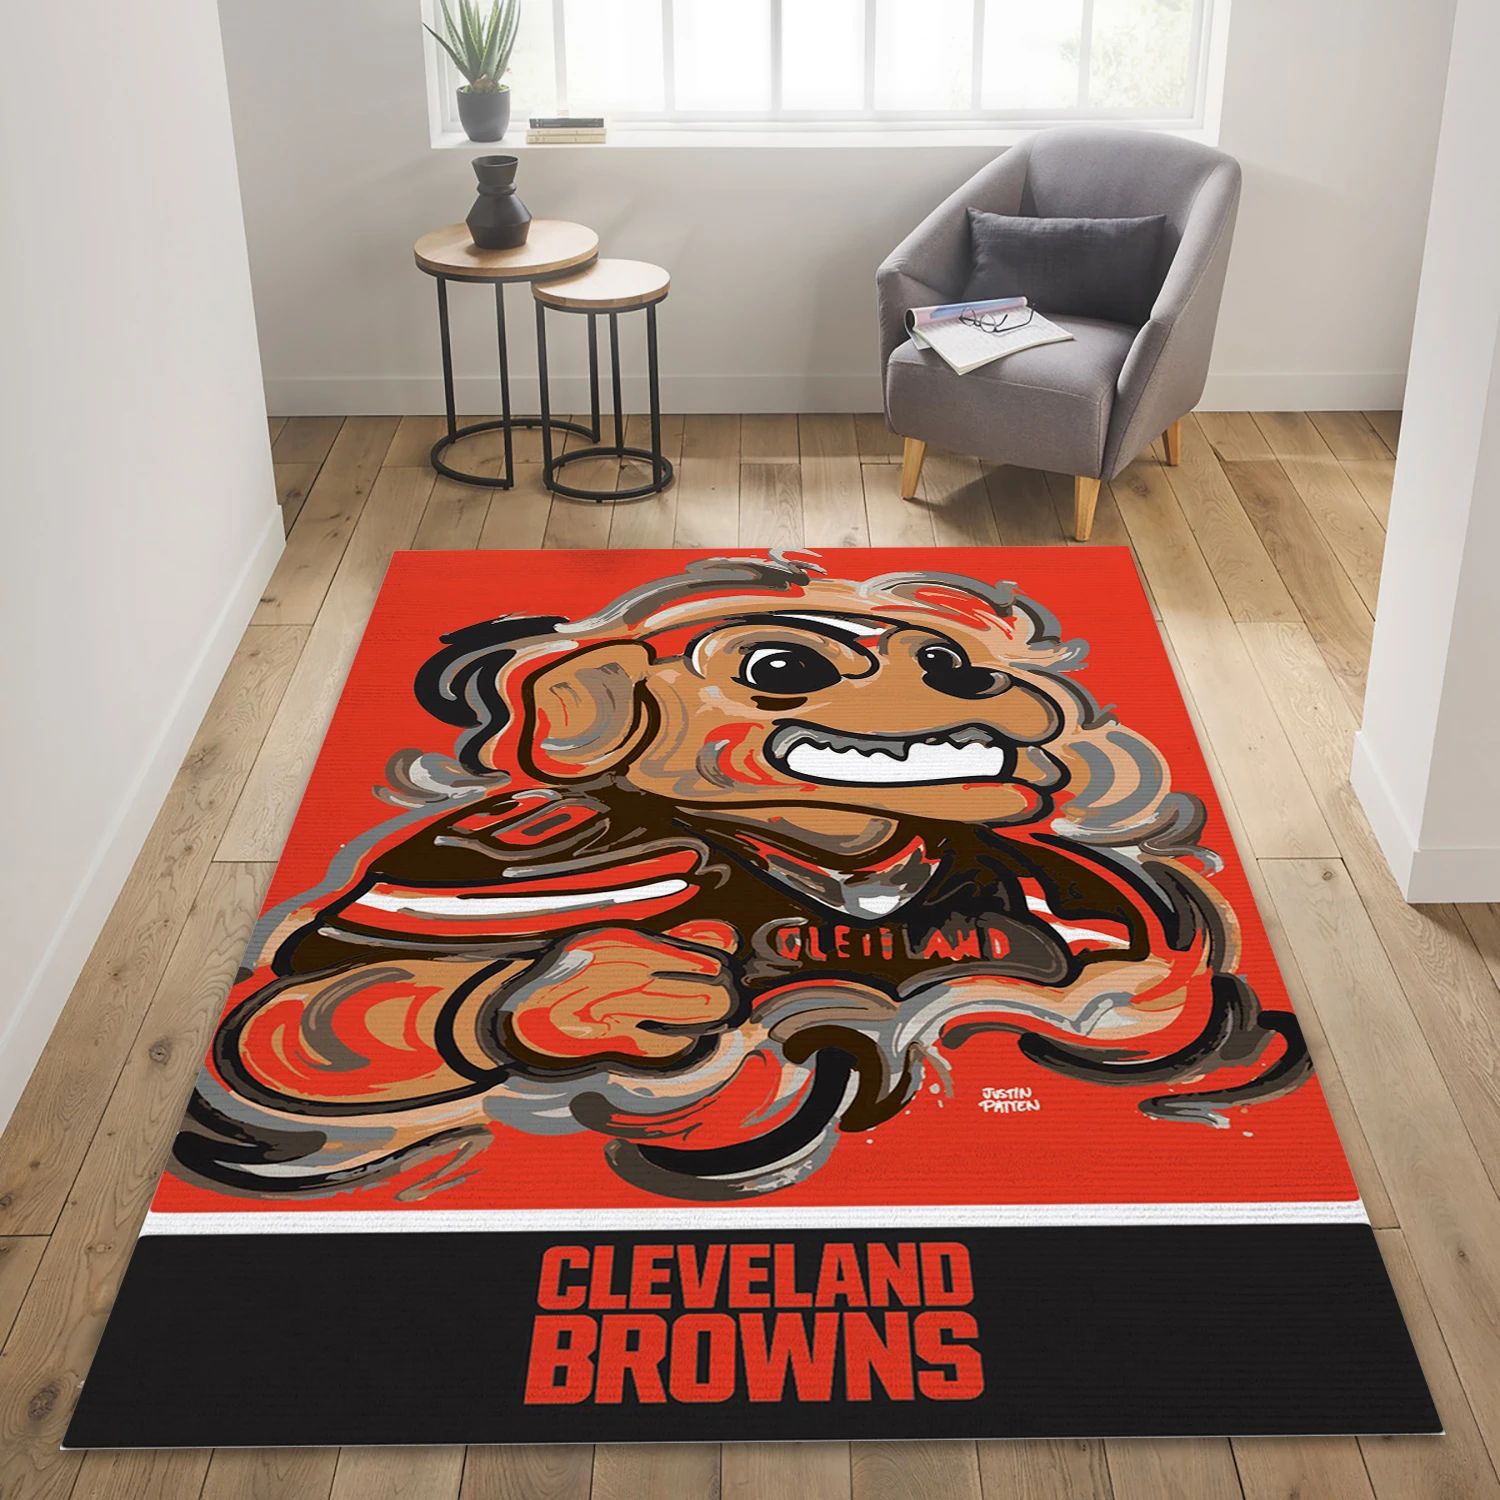 Cleveland Browns NFL Area Rug Carpet